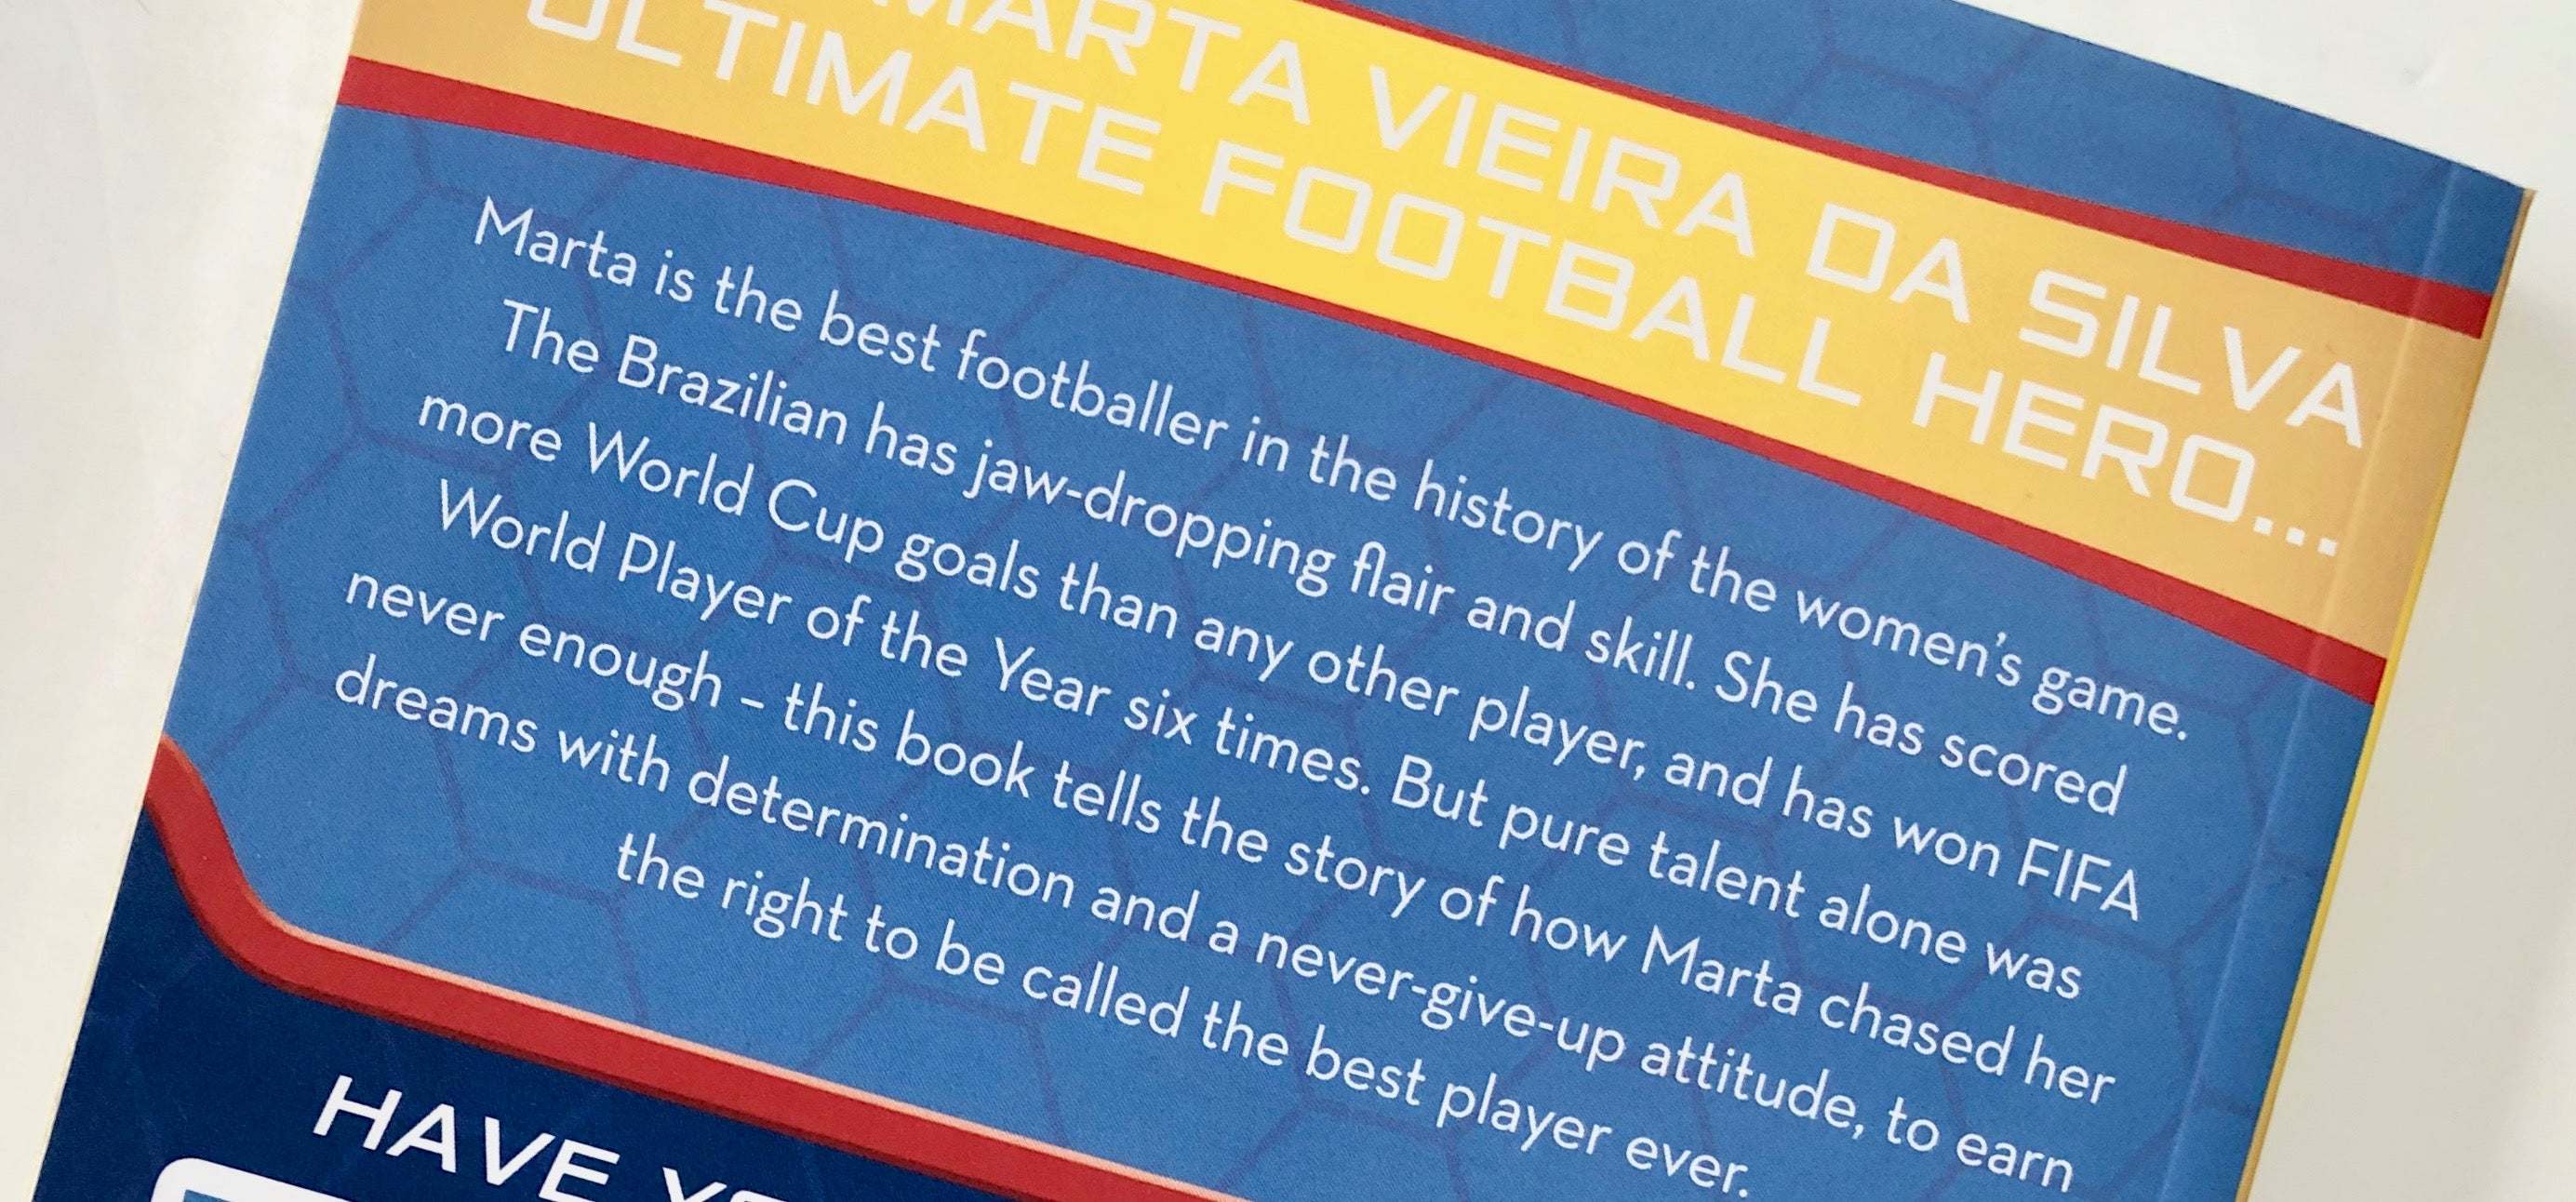 Ultimate Football Heroes - Marta